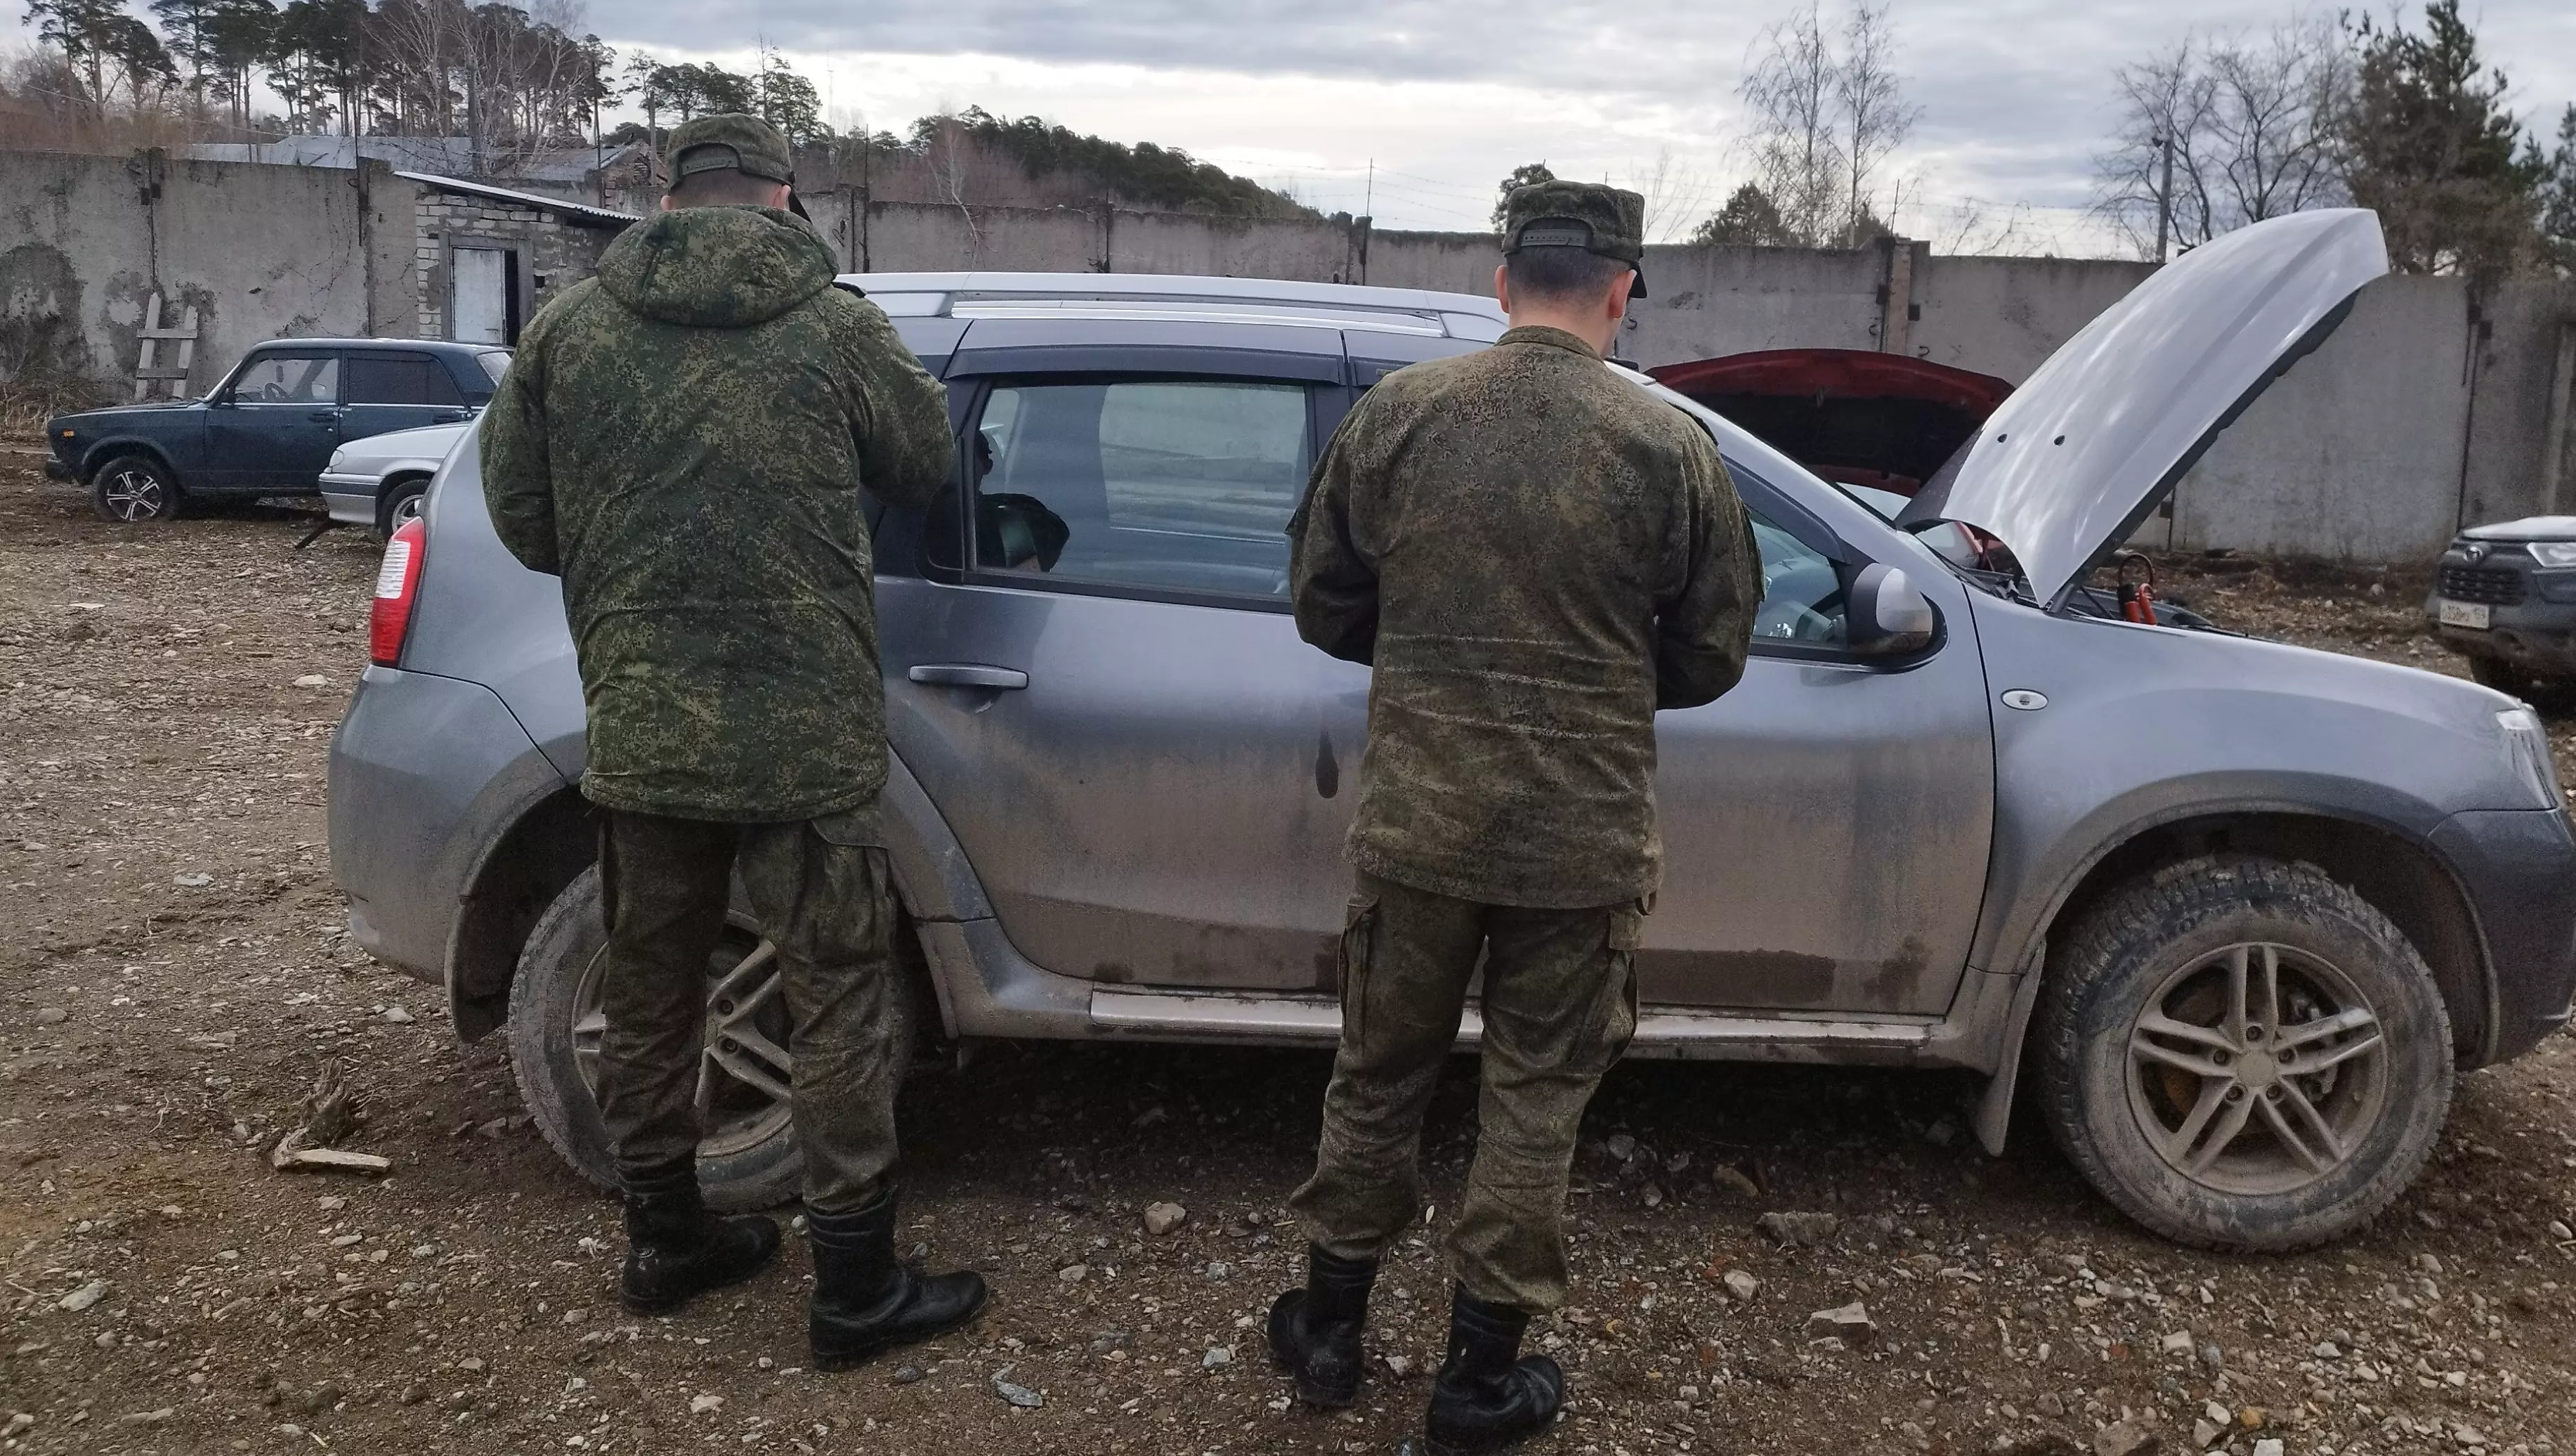 Авто, табак, одежда. В России стали активнее пепеправлять конфискат на Донбасс